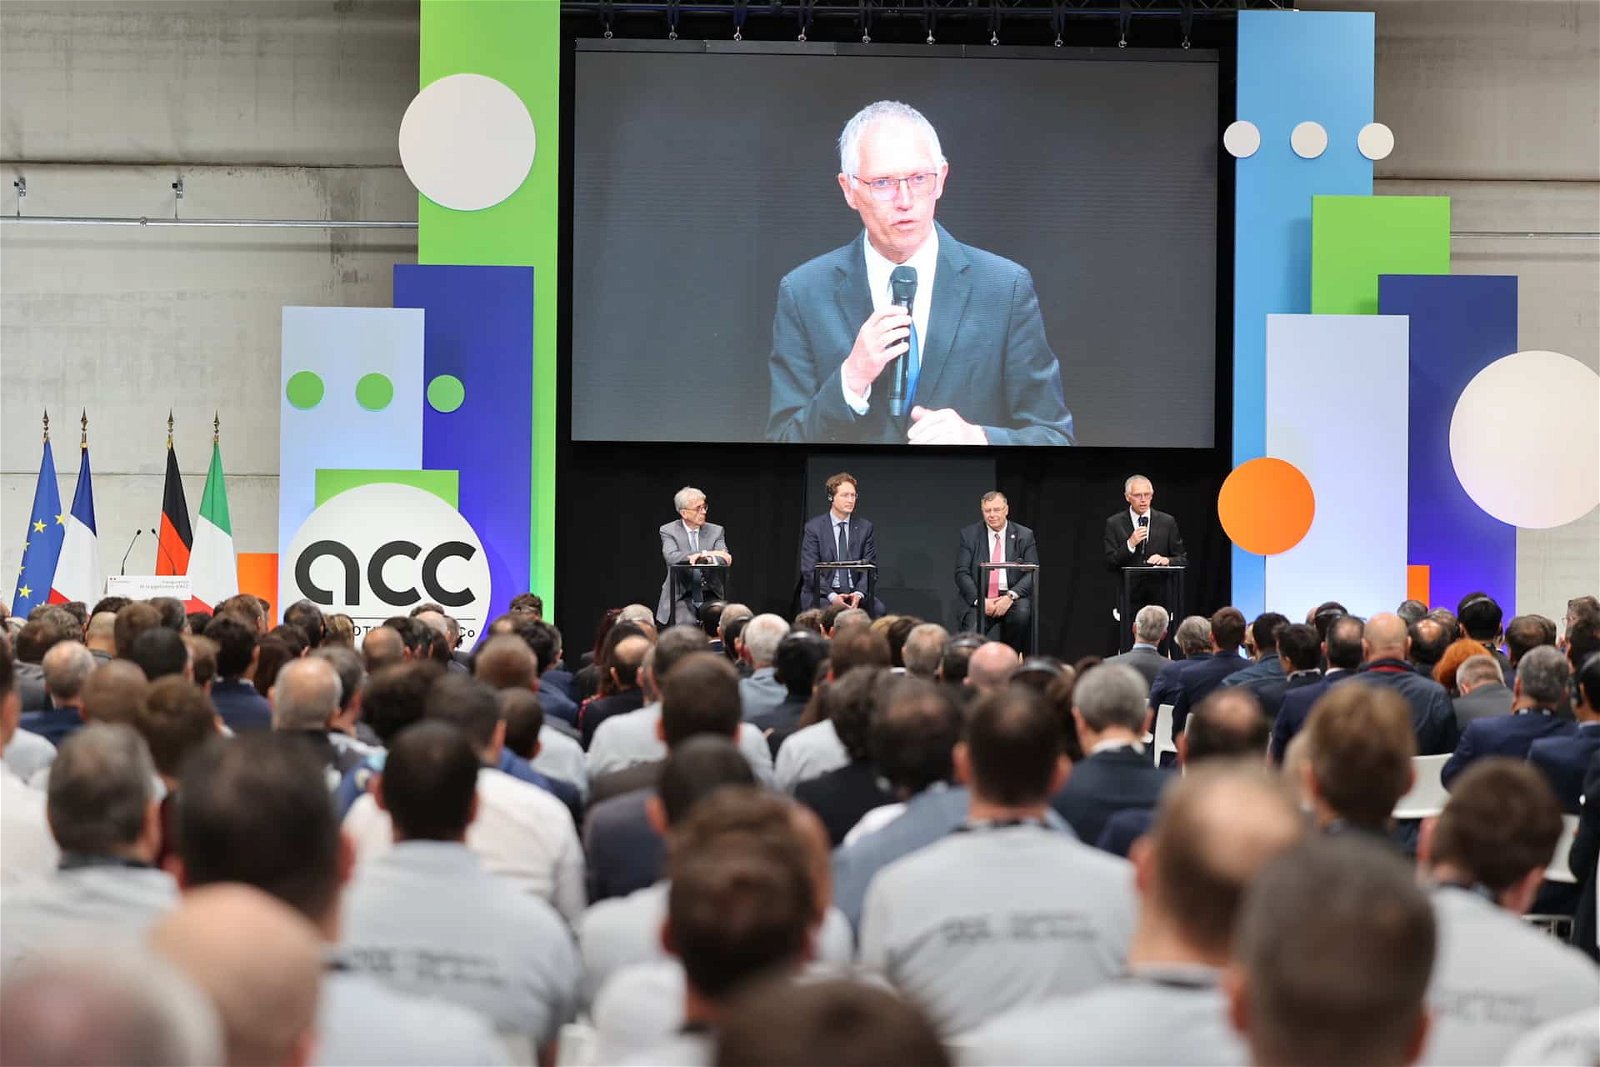 Stellantis’ Übergang zur Elektrifizierung in vollem Gange: Erste Batterie-Gigafactory von ACC in Frankreich eröffnet